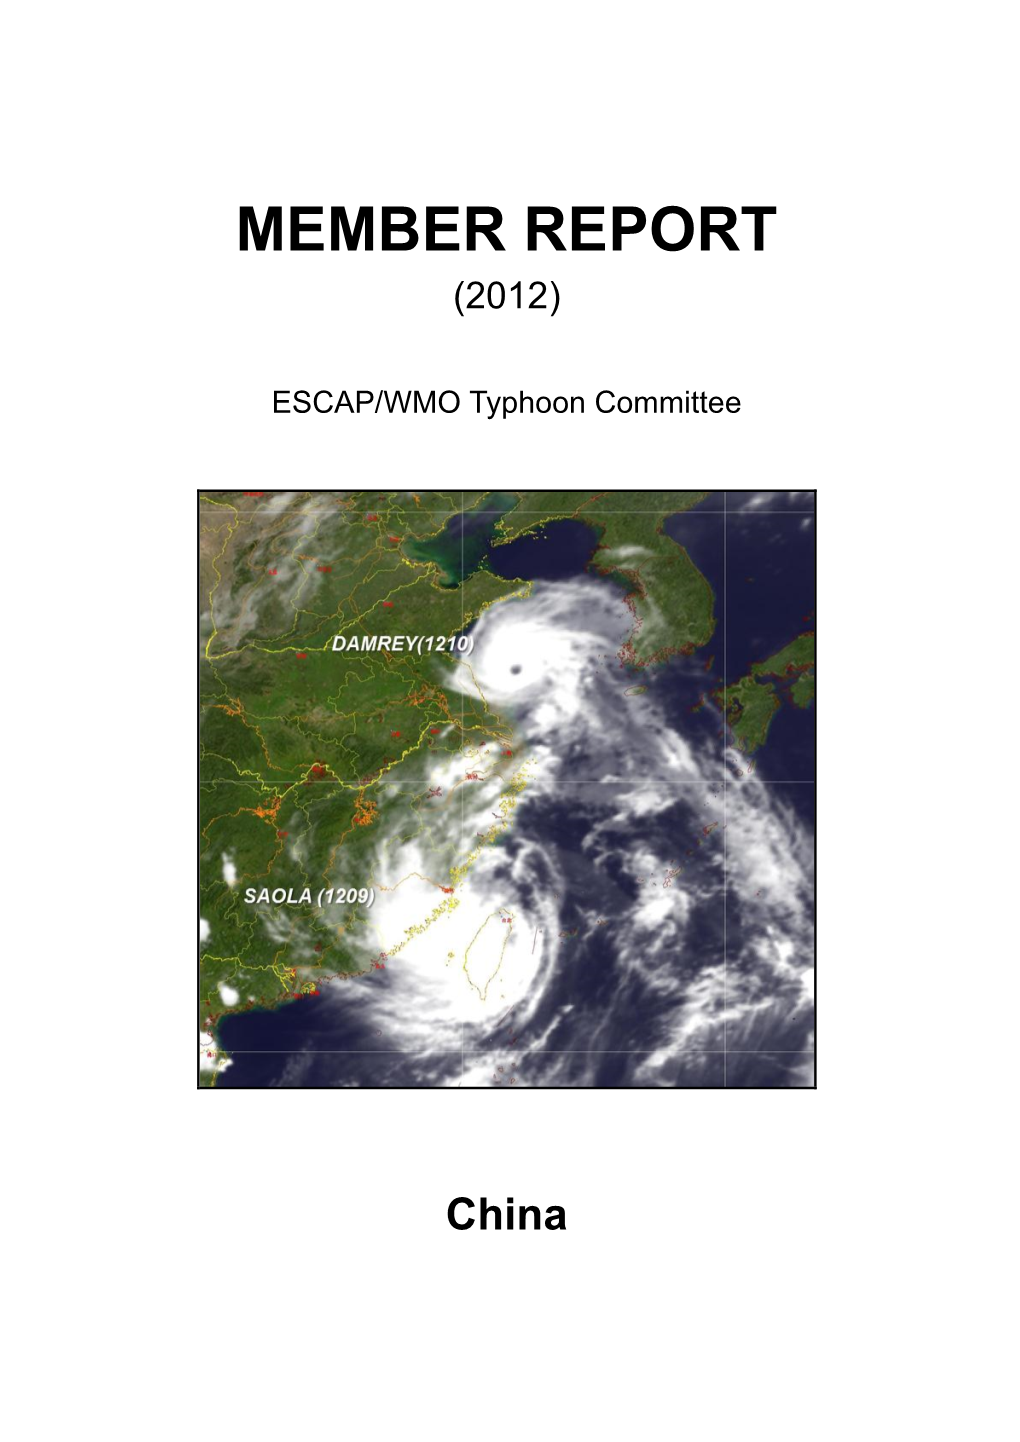 Member Report: China